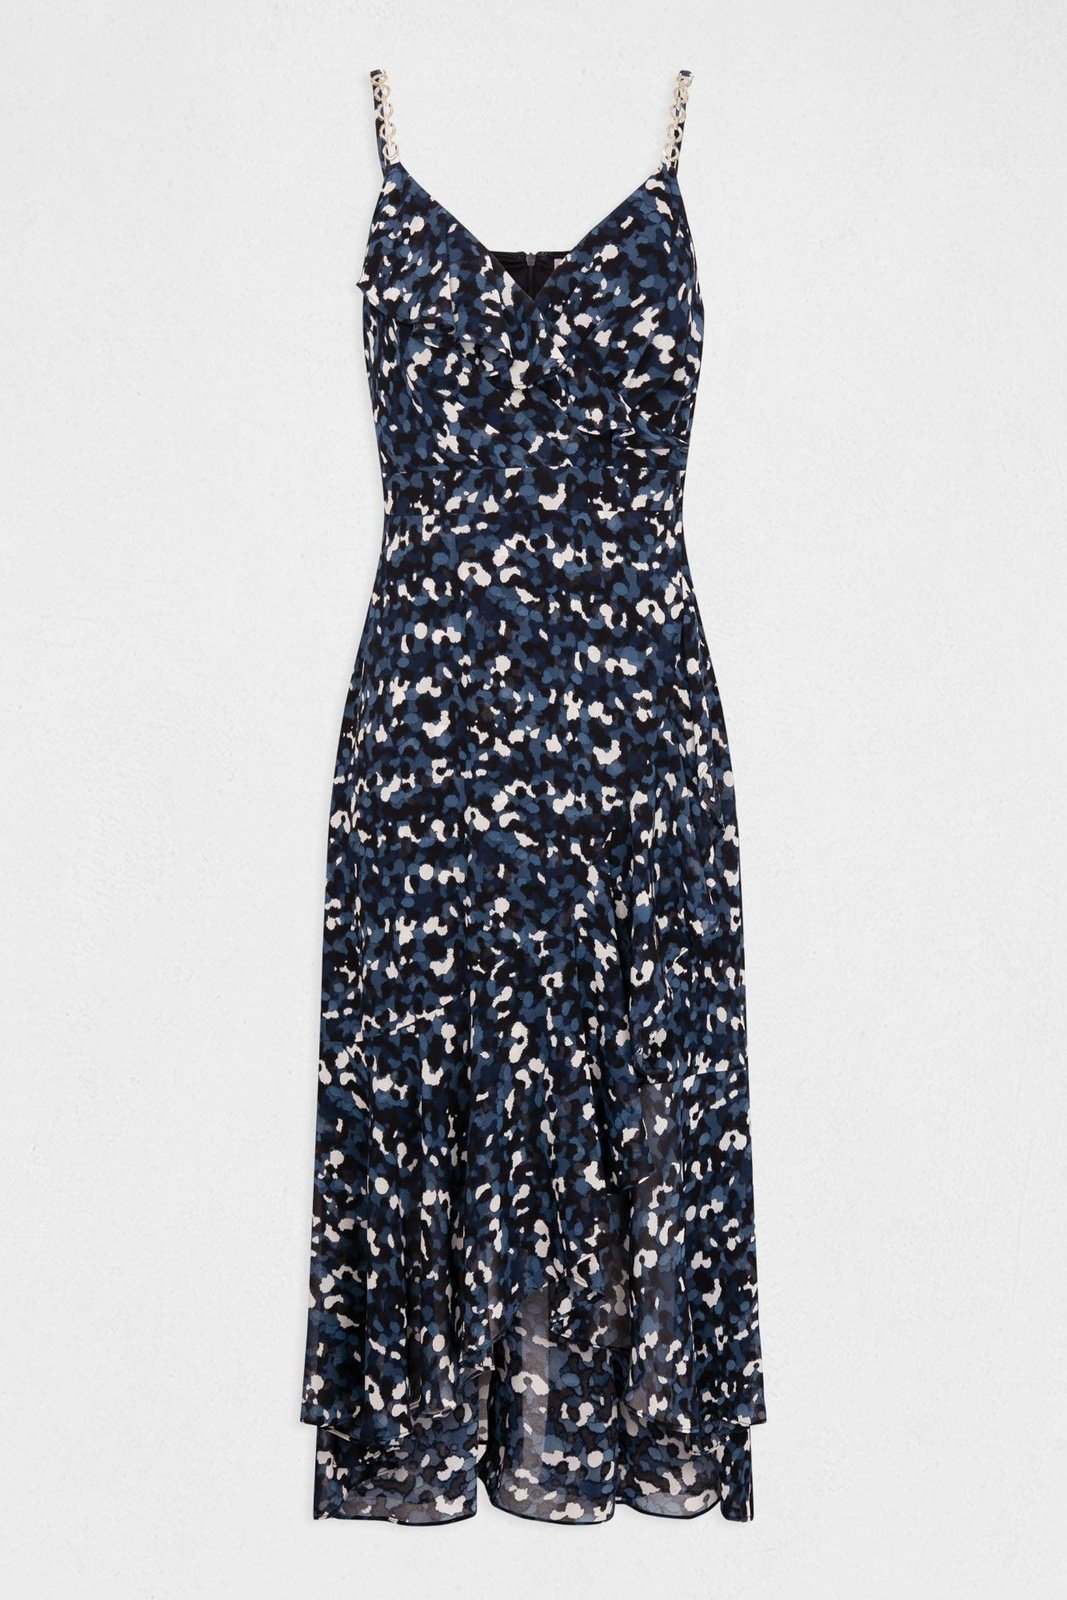 MORGAN - שמלת מקסי פרחונית בצבע כחול - MASHBIR//365